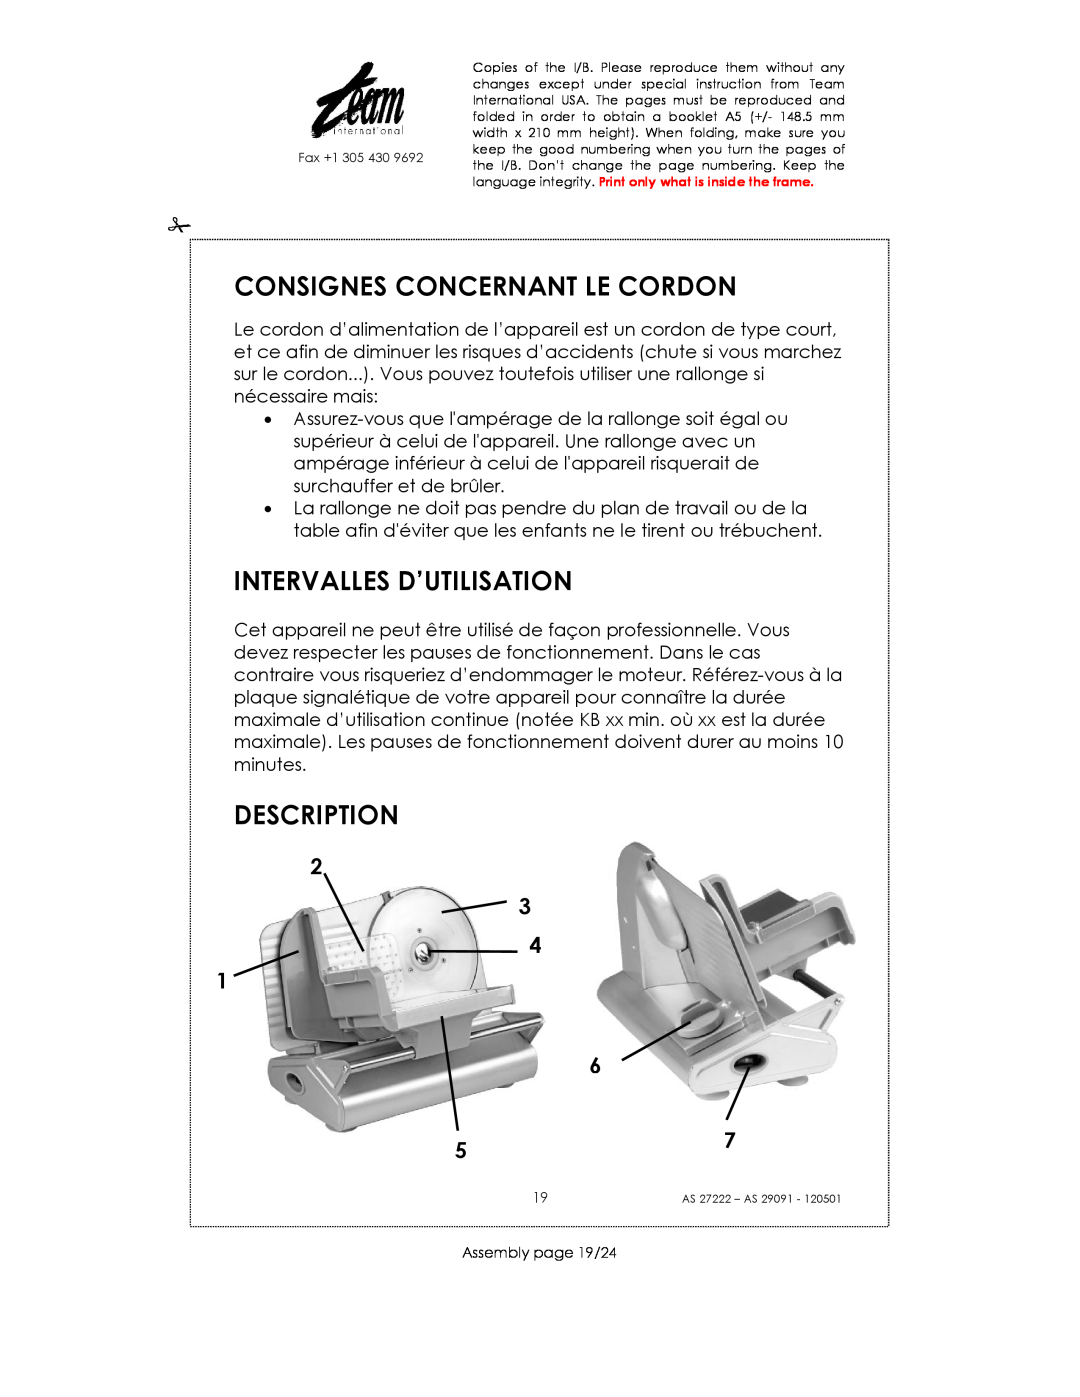 Kalorik AS 27222, AS 29091 Consignes Concernant Le Cordon, Intervalles D’Utilisation, Description, Assembly page 19/24 